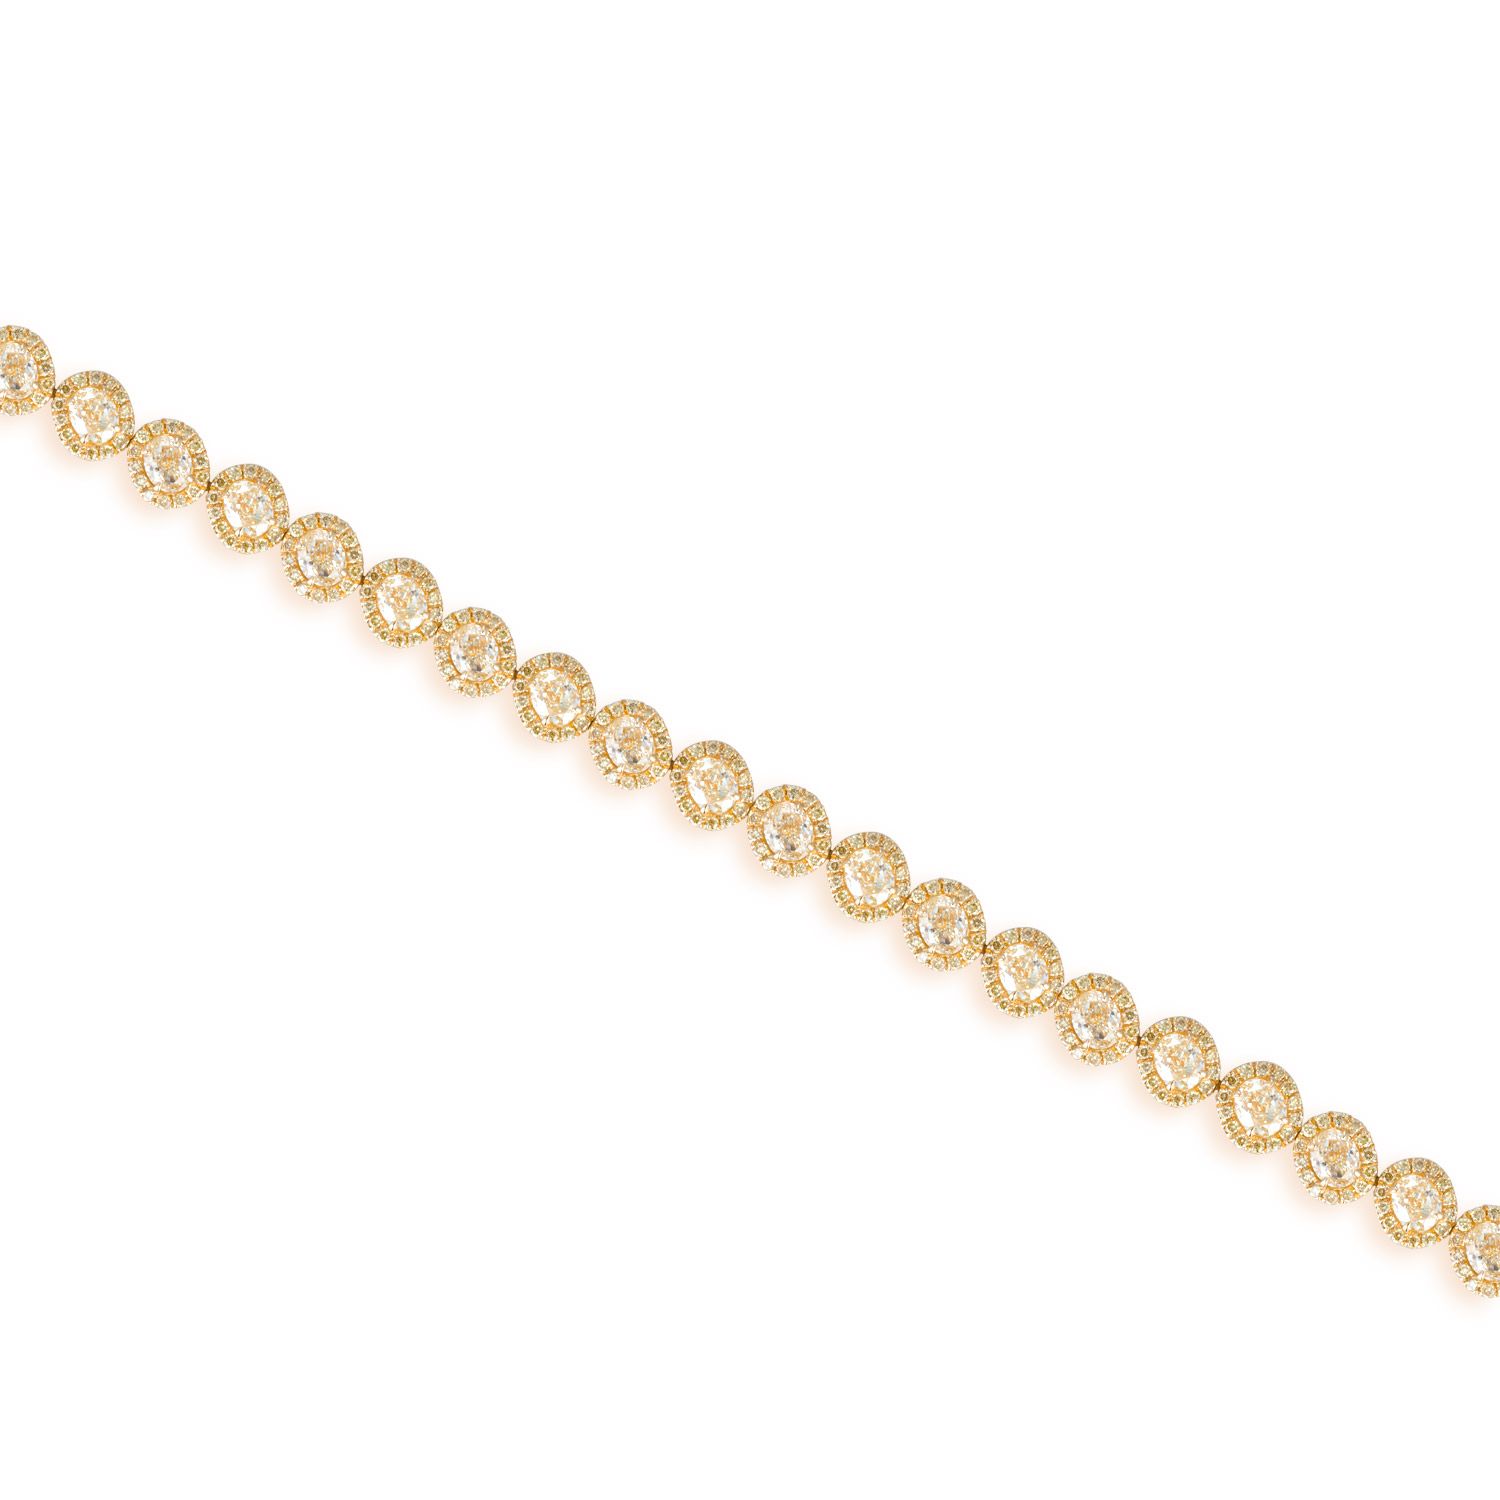 Fancy Light Yellow Diamond Bracelet, 8.53 Ct. TW, Oval shape, EG_Lab Certified, J5826062433